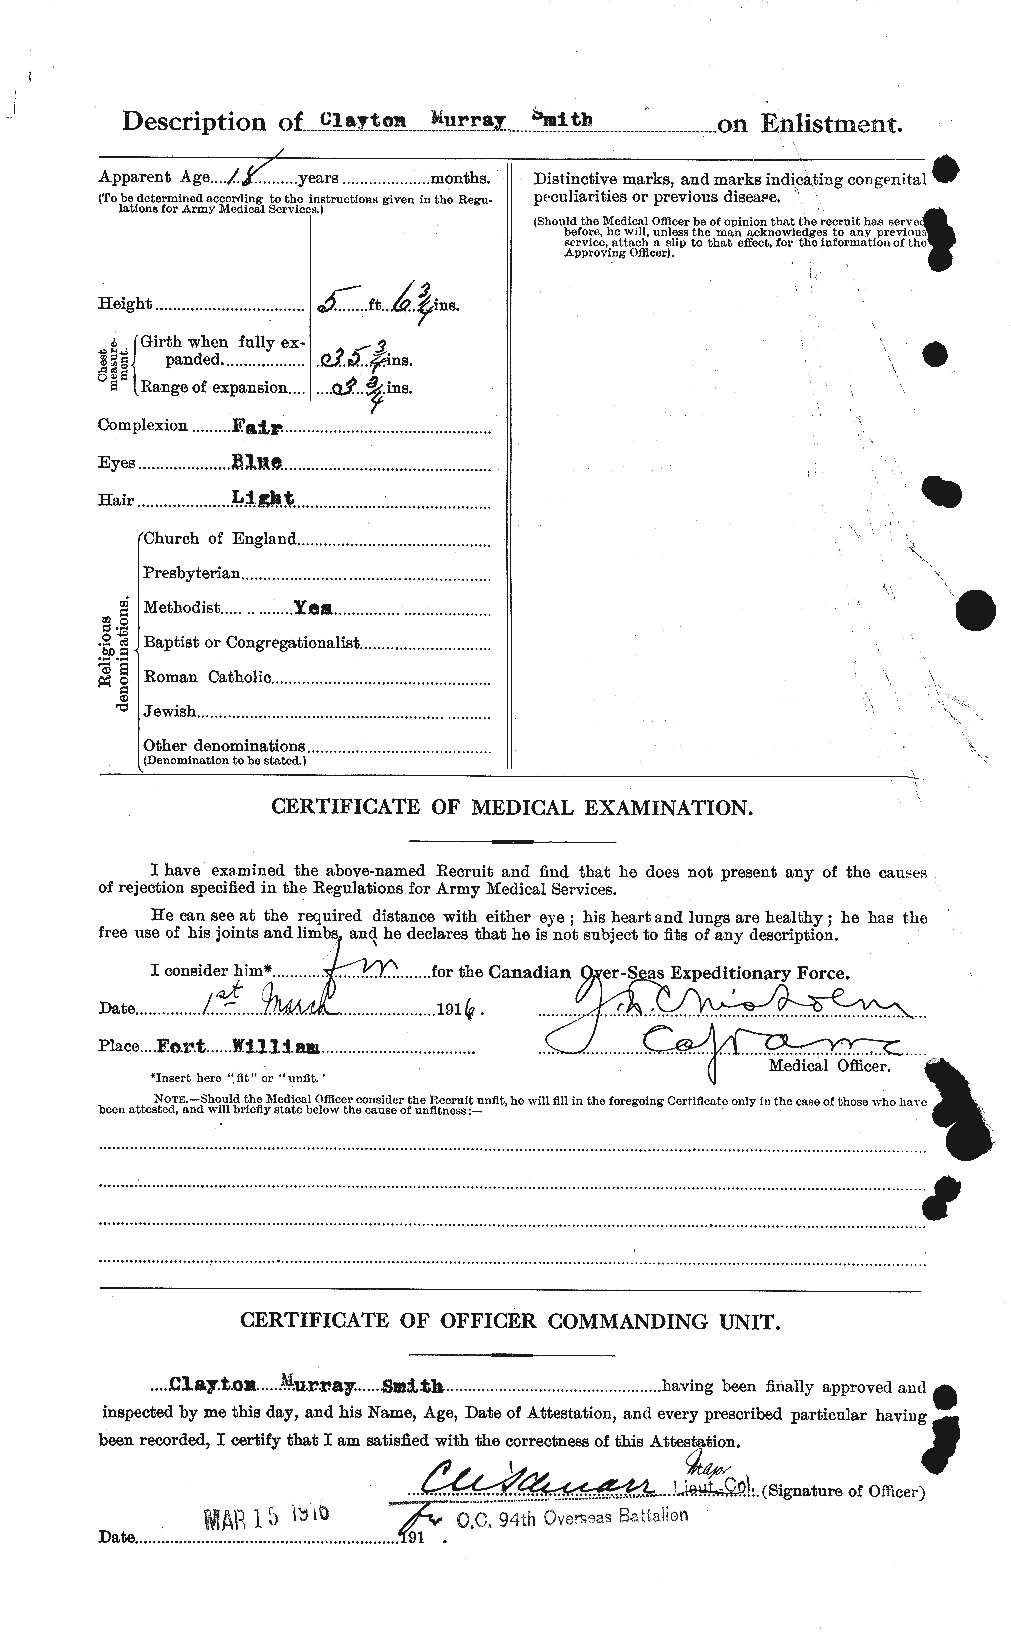 Dossiers du Personnel de la Première Guerre mondiale - CEC 103757b